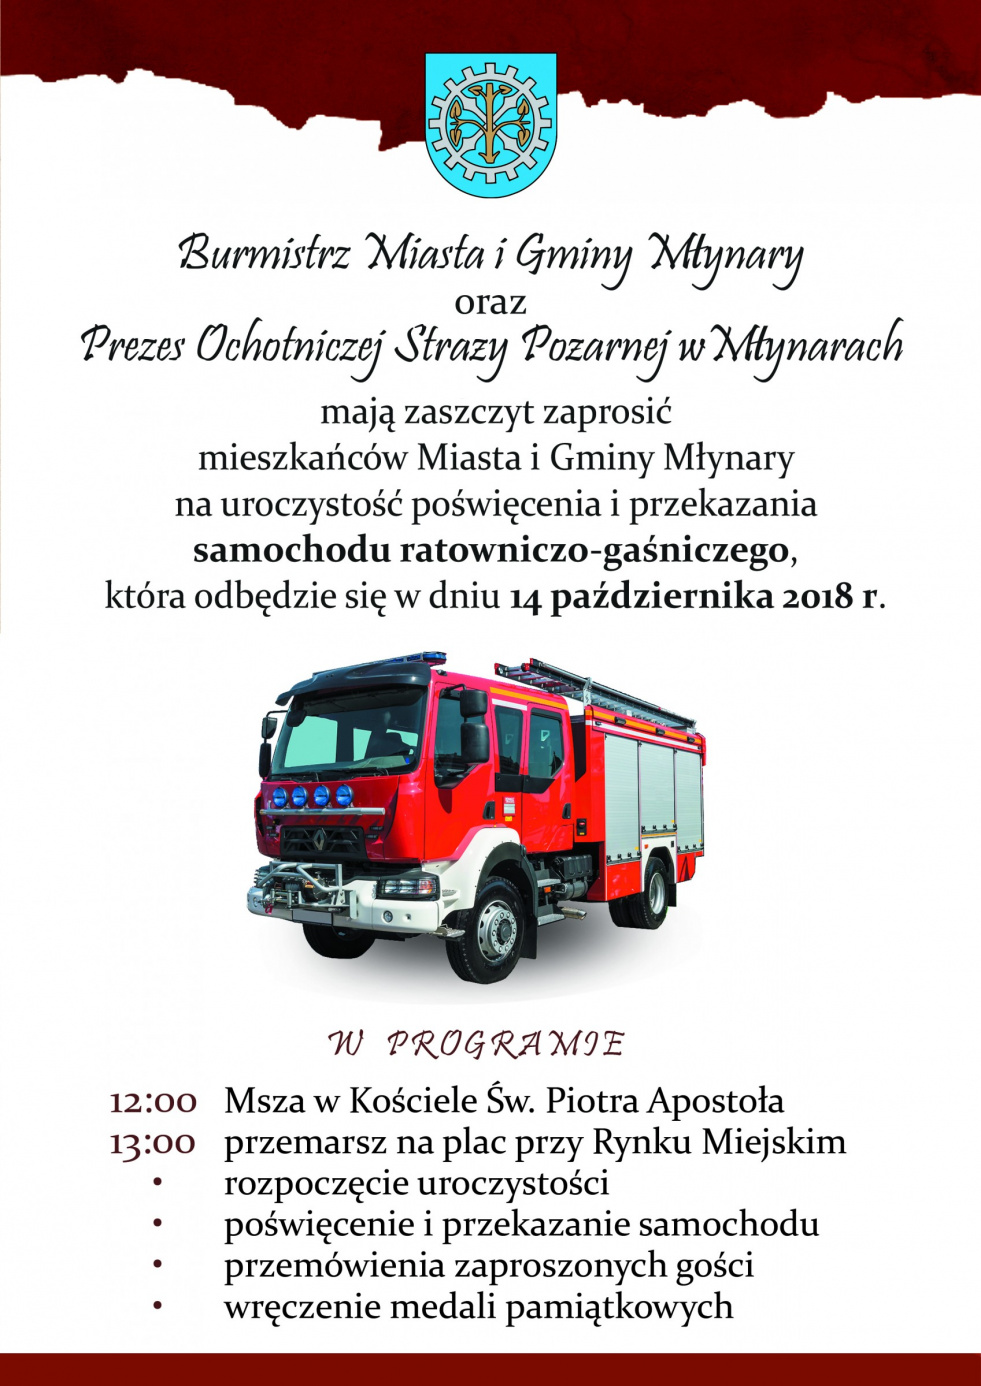  Zaproszenie na uroczystość poświęcenia i przekazania samochodu ratowniczo-gaśniczego